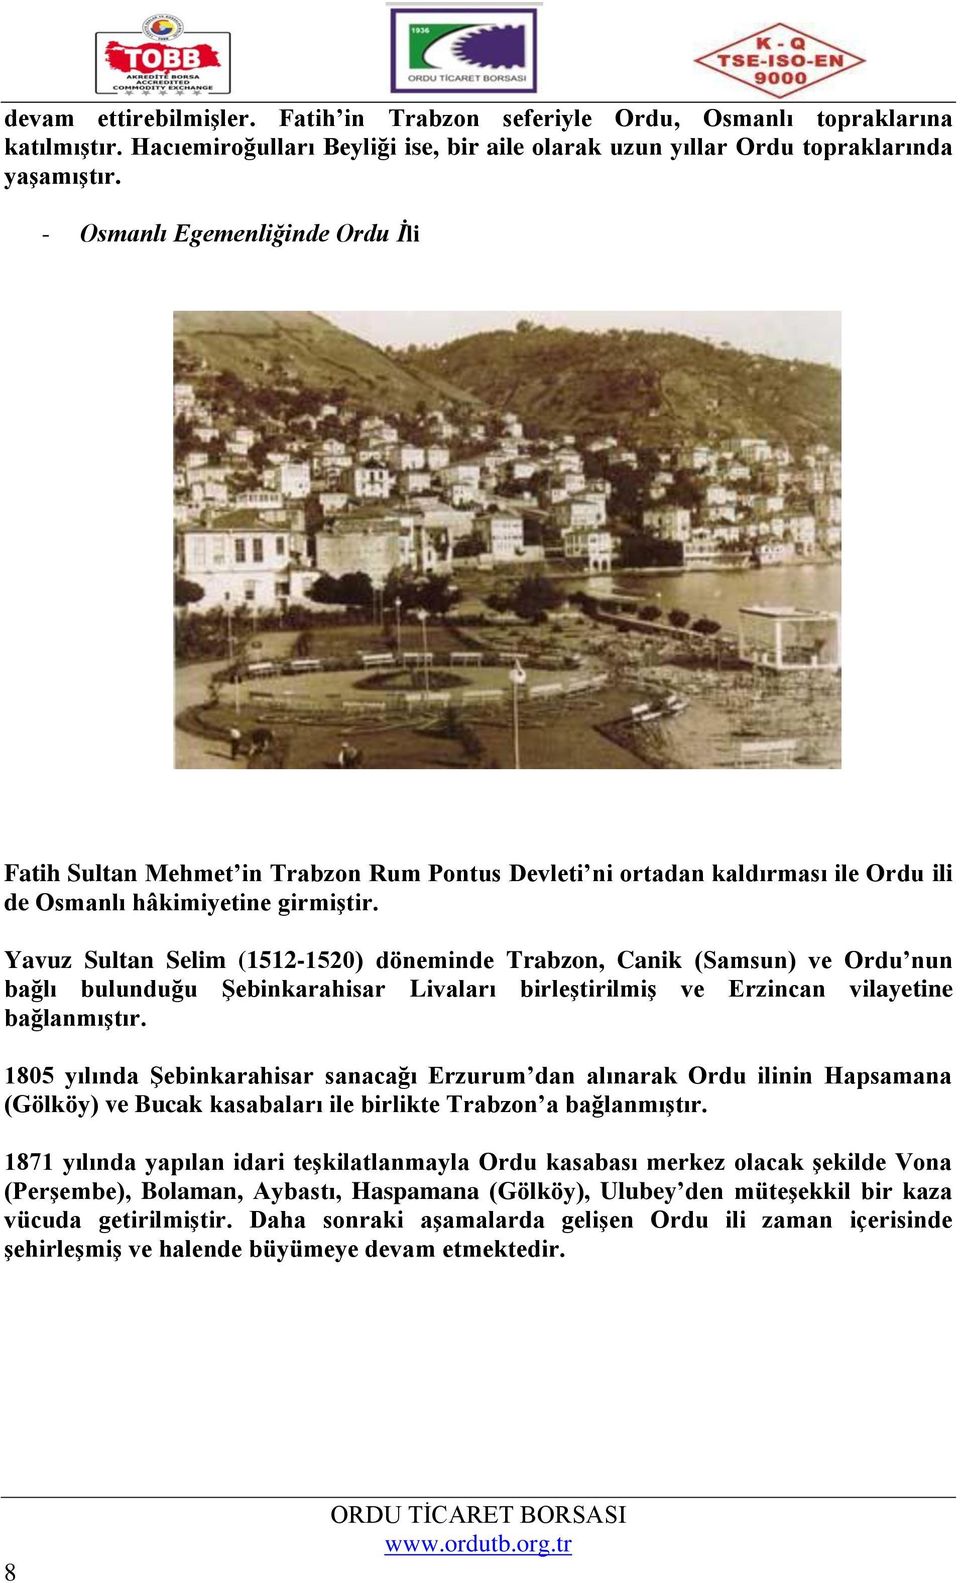 Yavuz Sultan Selim (1512-1520) döneminde Trabzon, Canik (Samsun) ve Ordu nun bağlı bulunduğu Şebinkarahisar Livaları birleştirilmiş ve Erzincan vilayetine bağlanmıştır.